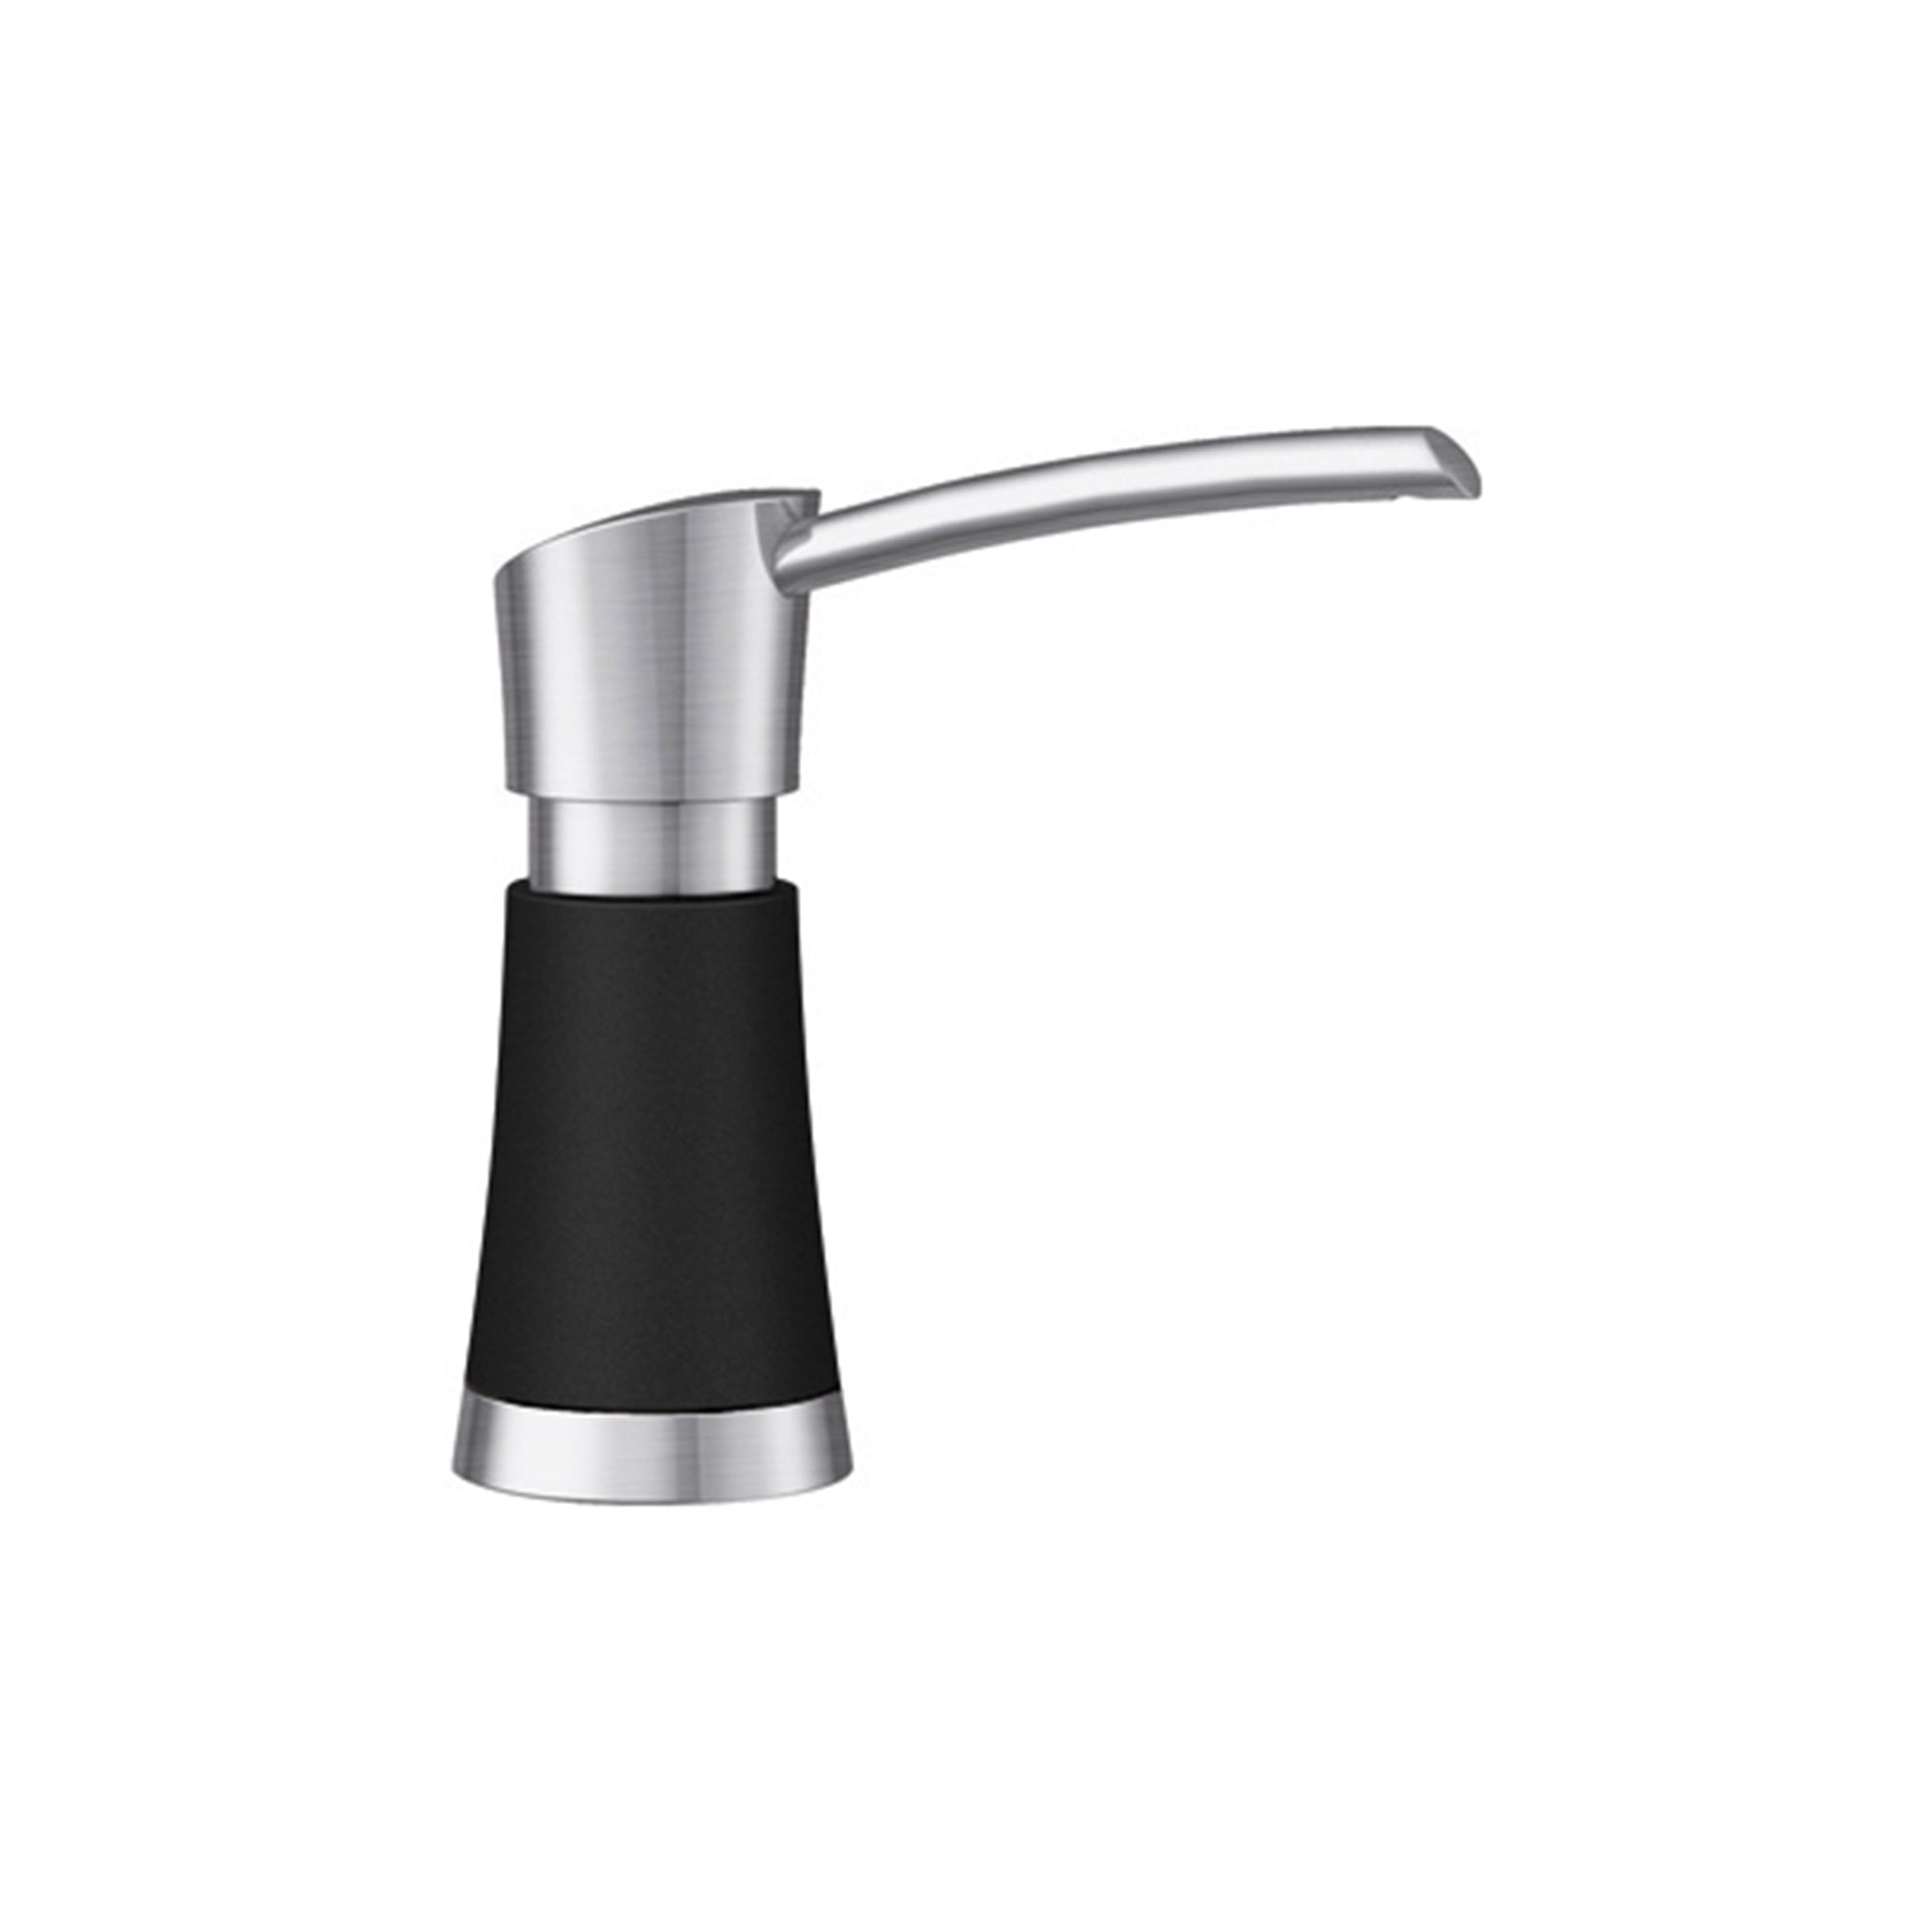 Blanco 442902- ARTONA Soap Dispenser, PVD Steel/Coal Black, (370 ml) 12.5 fl oz. - FaucetExpress.ca